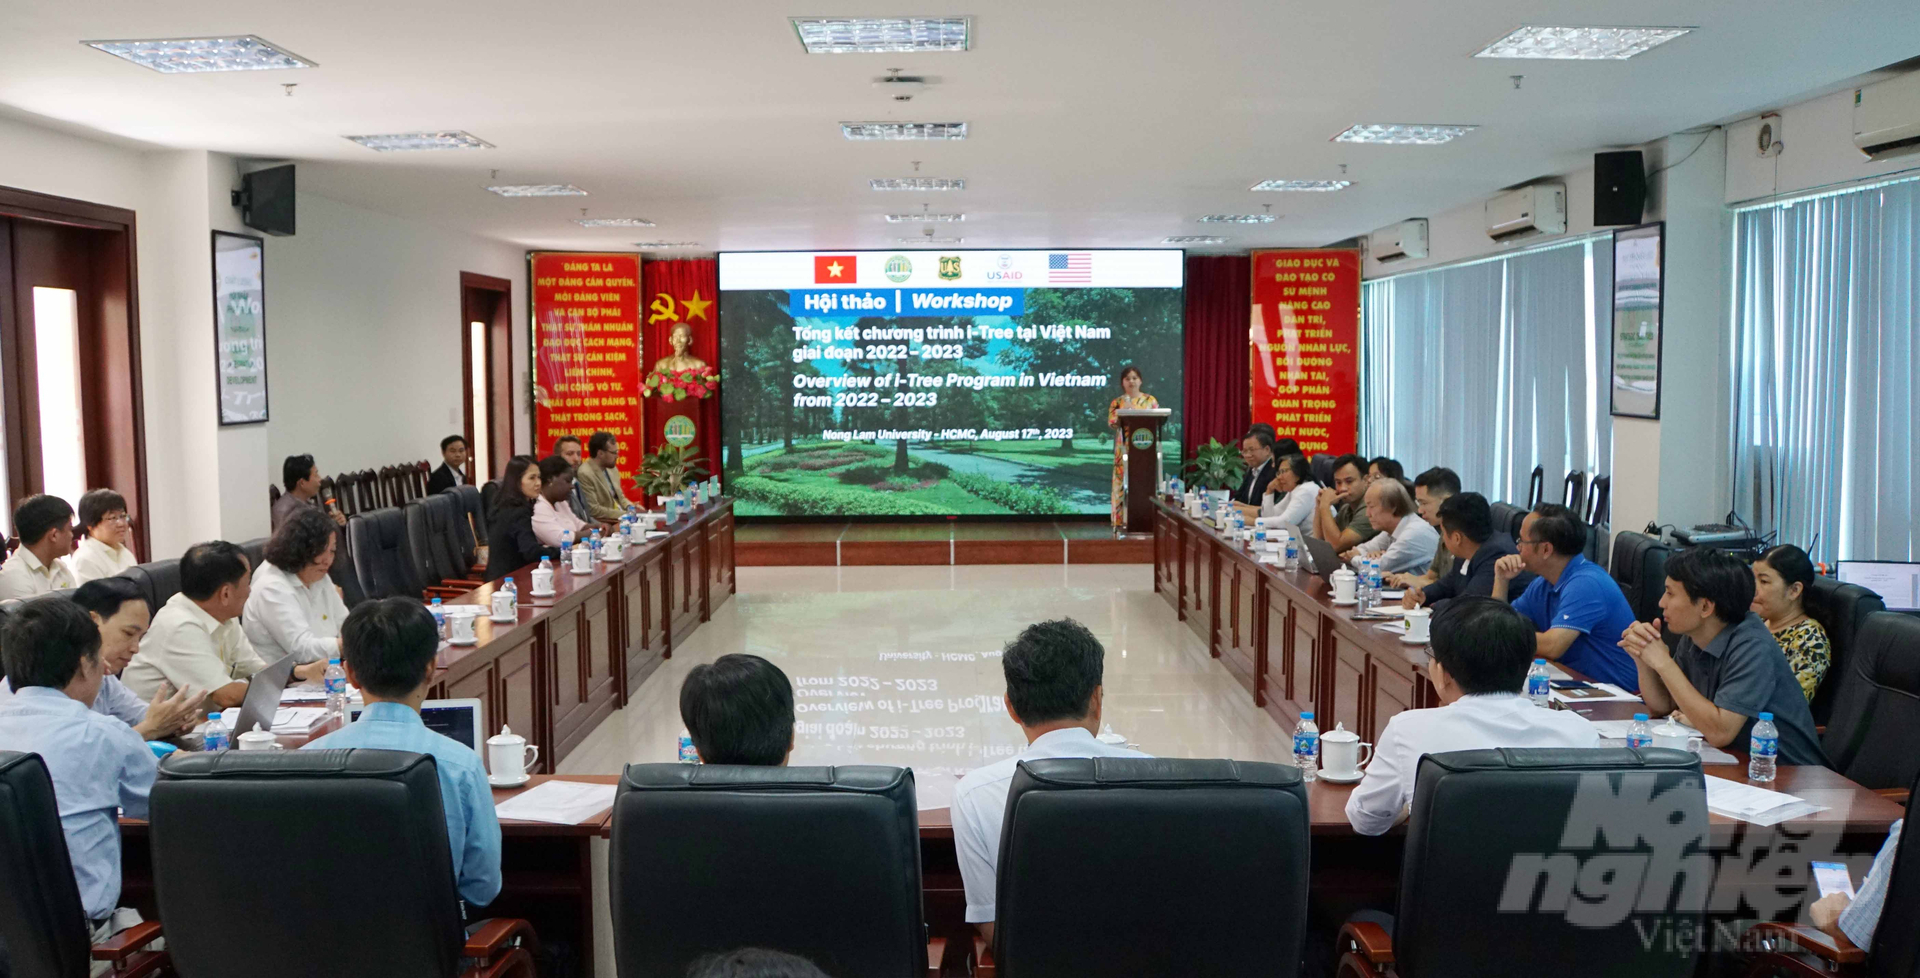 Hội thảo tổng kết chương trình i-Tree tại Việt Nam giai đoạn 2022 - 2023. Ảnh: Lê Bình.